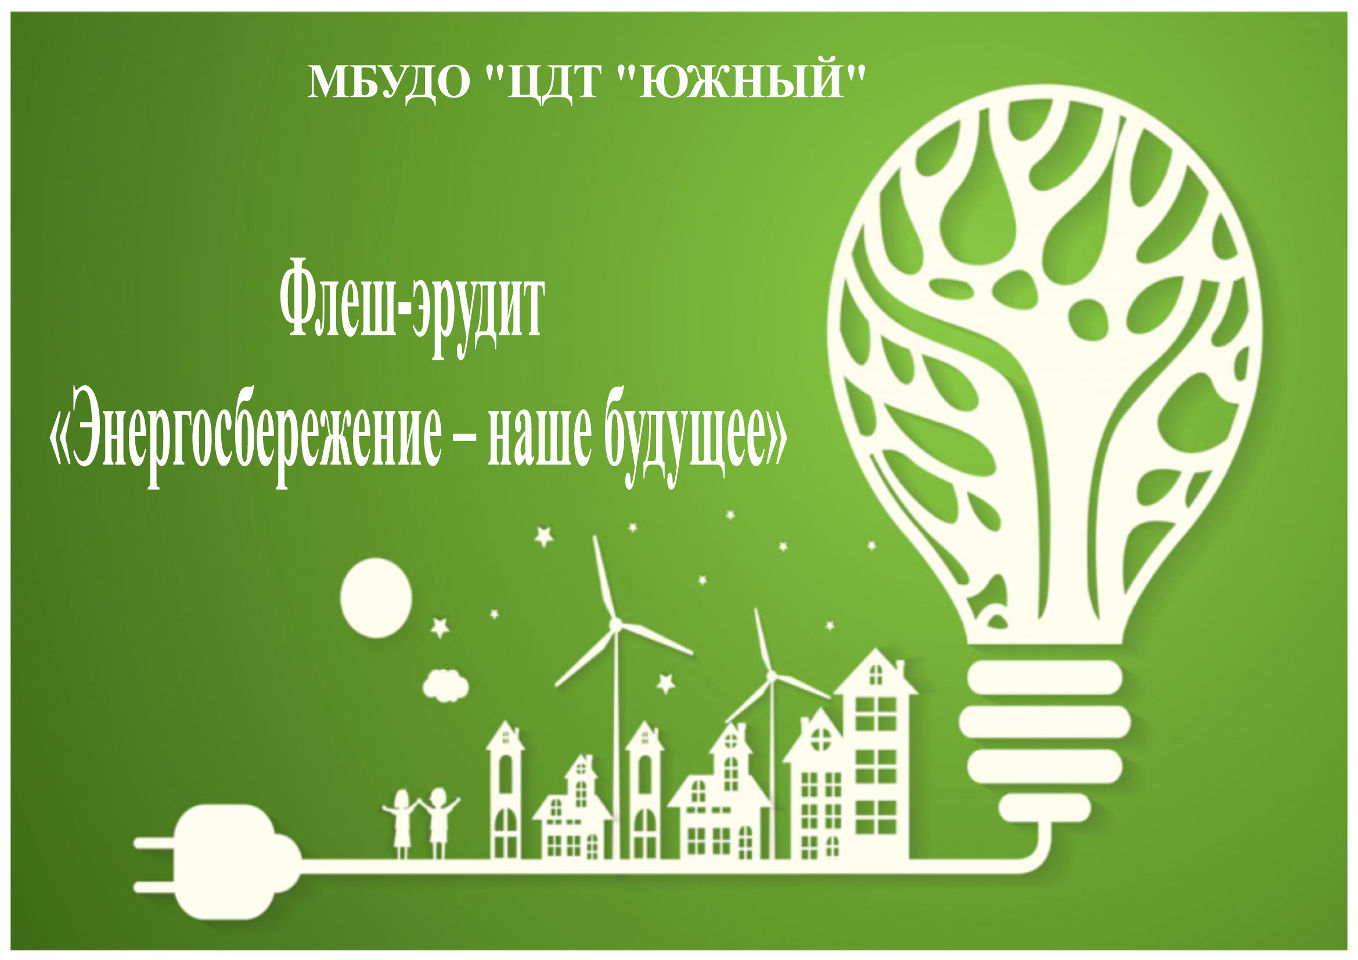 Флеш-эрудит «Энергосбережение - наше будущее»